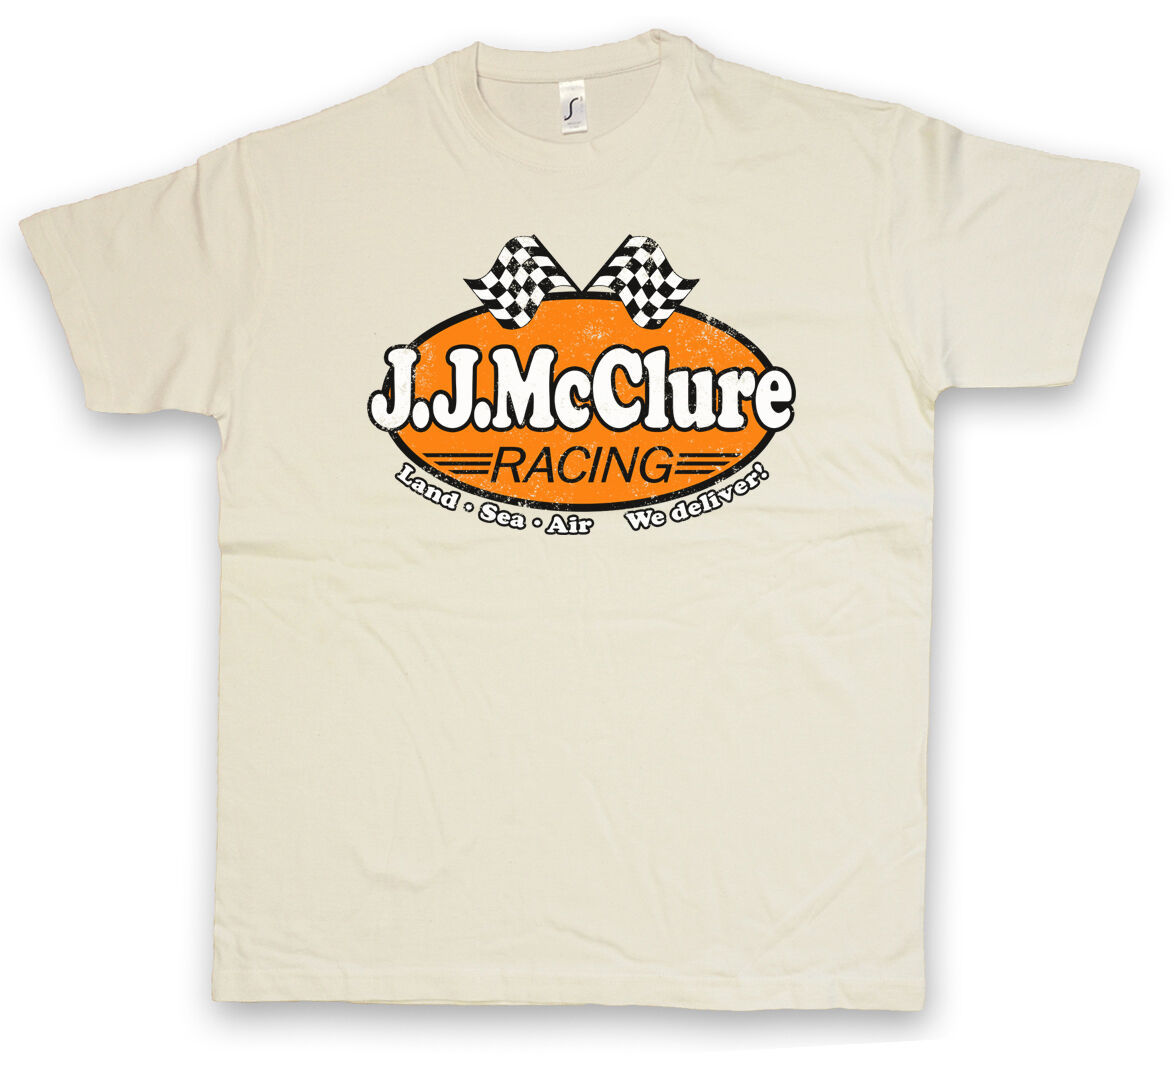 セットアップ MCCLURE J. J. 送料無料 RACING Tシャツ S~5XL TEE